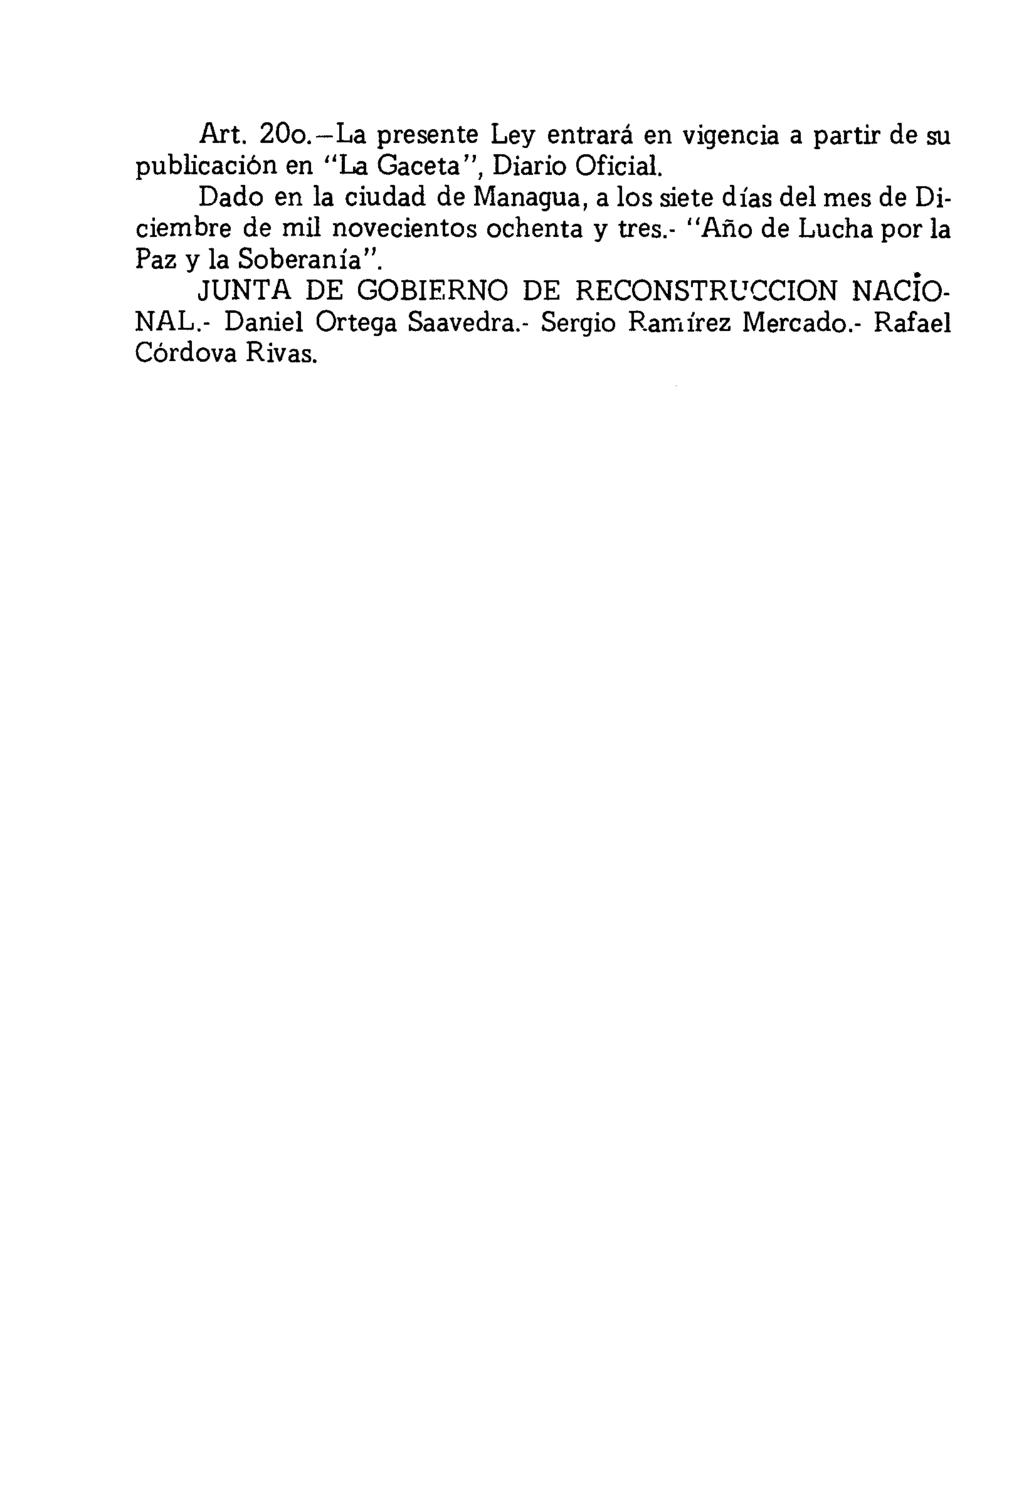 Art. 200.-La presente Ley entrará en vigencia a partir de su pu blicaci6n en "La Gaceta", Diario Oficial.